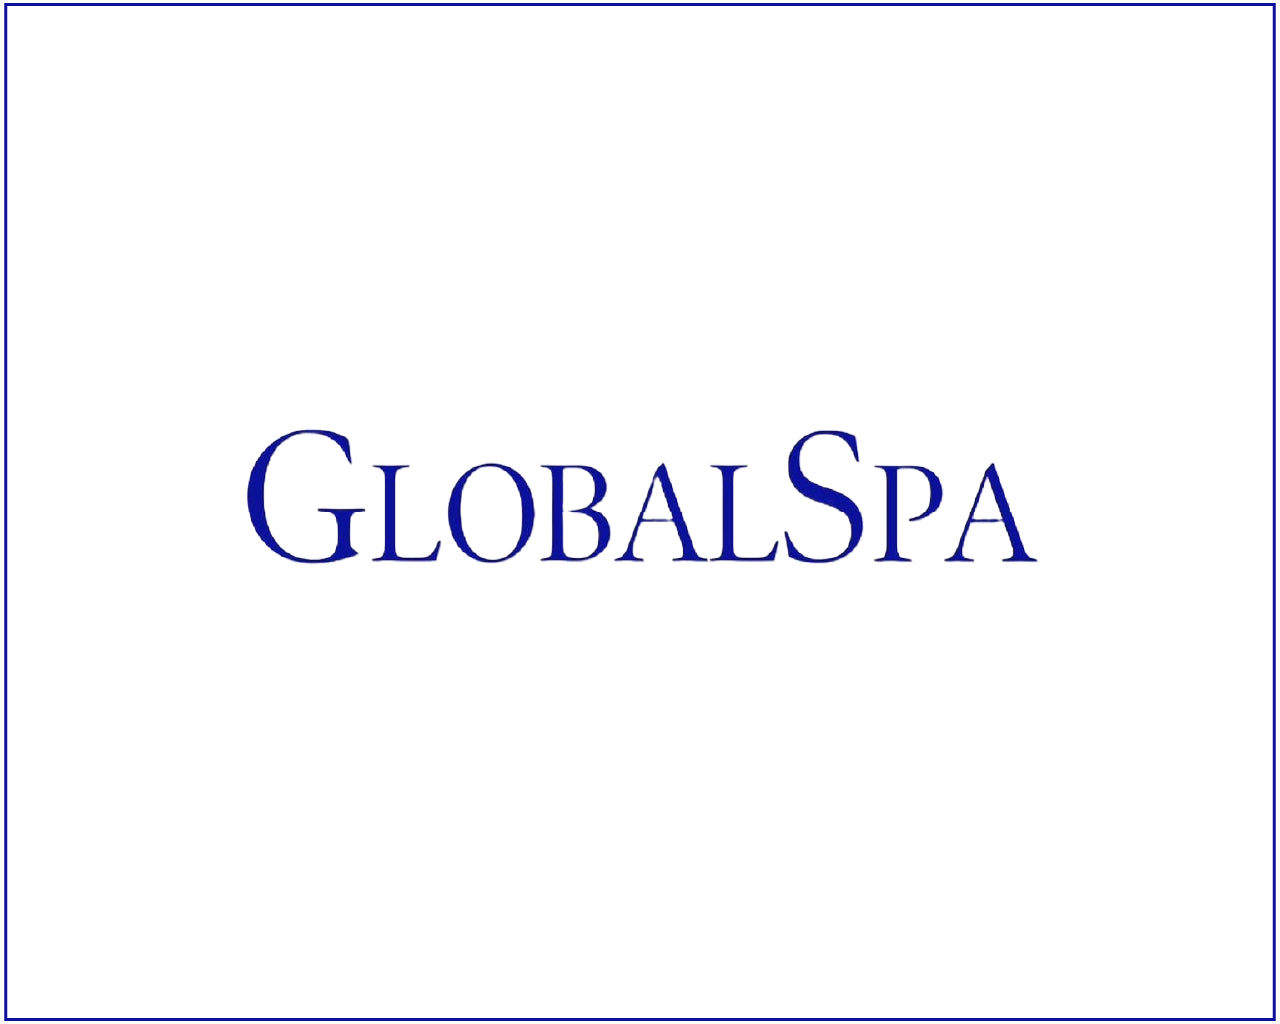 Global spa.webp__PID:b5224792-3609-4694-9d79-33f48ae2705c